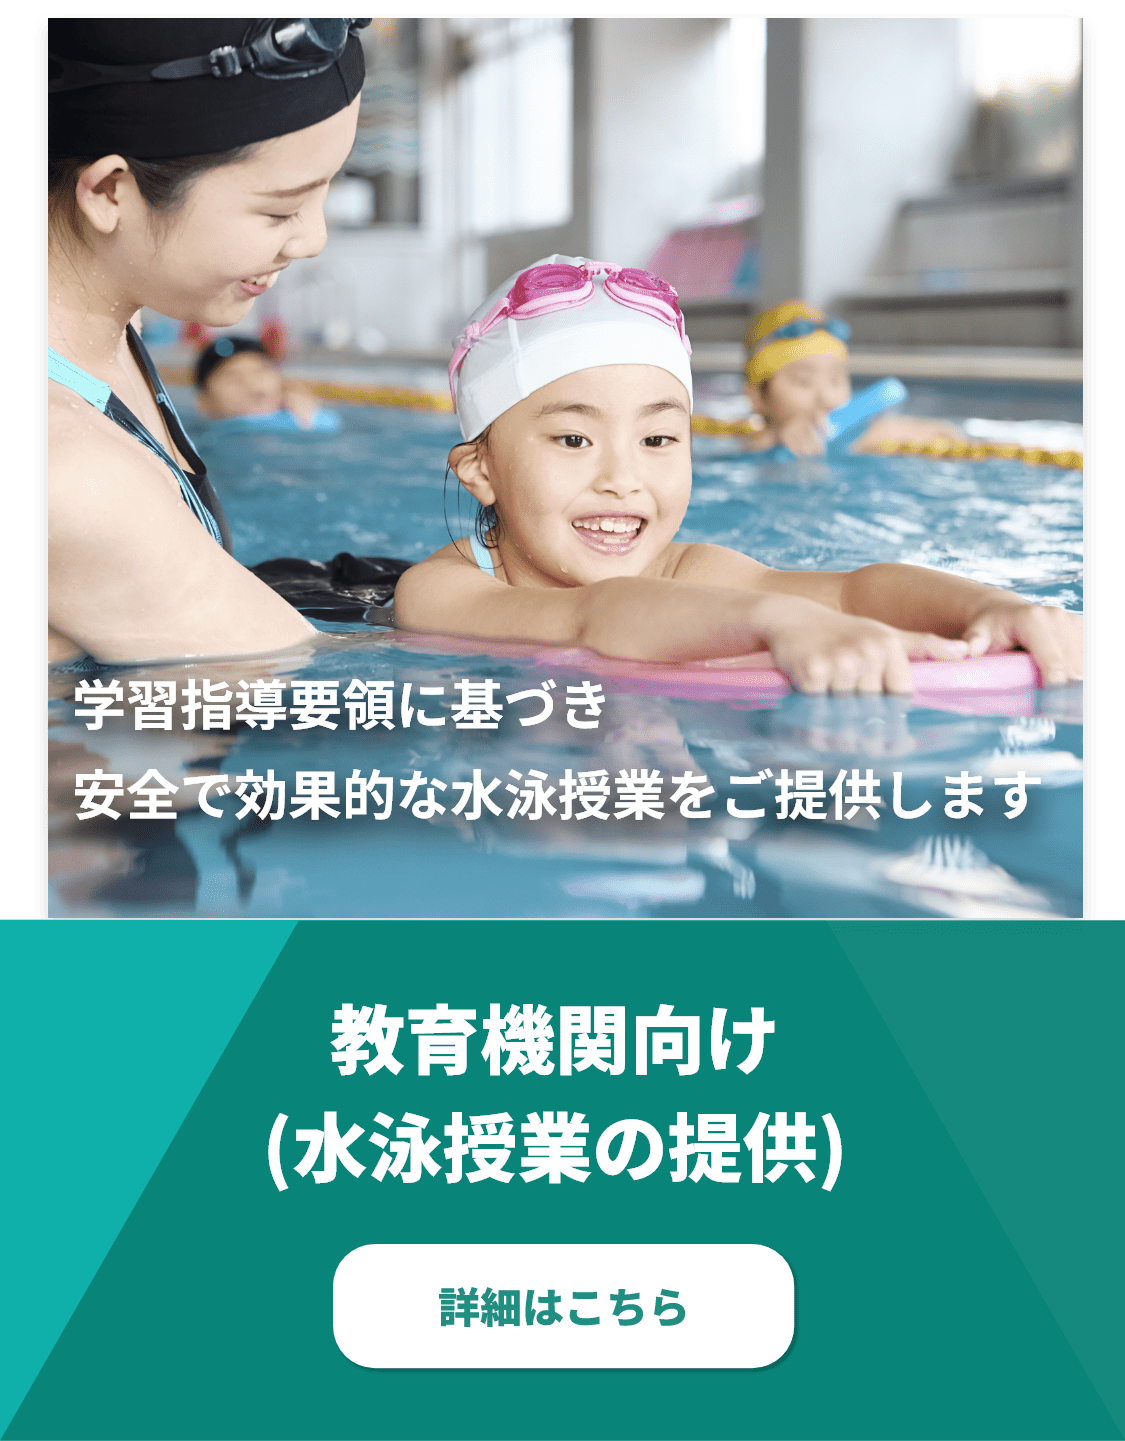 学習指導要領に基づき安全で効果的な水泳授業をご提供します